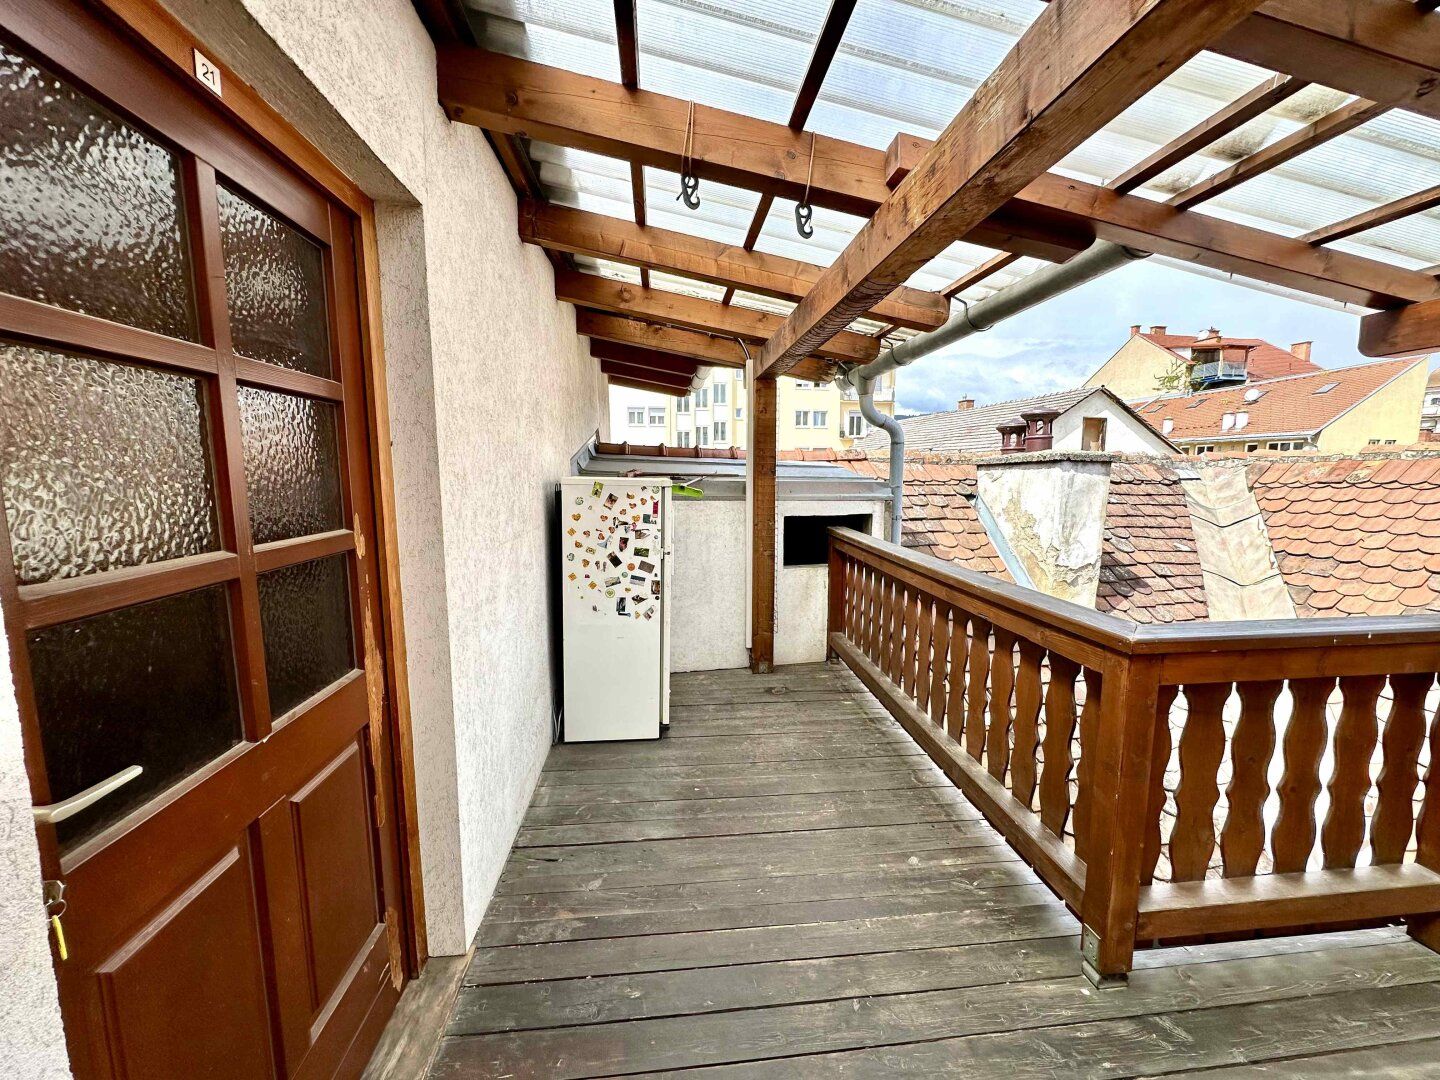 PROVISIONSFREI! Charmante 2-Zimmer-Wohnung mit sonniger Terrasse in zentraler Lage nahe Grieskai und Südtirolerplatz in Graz